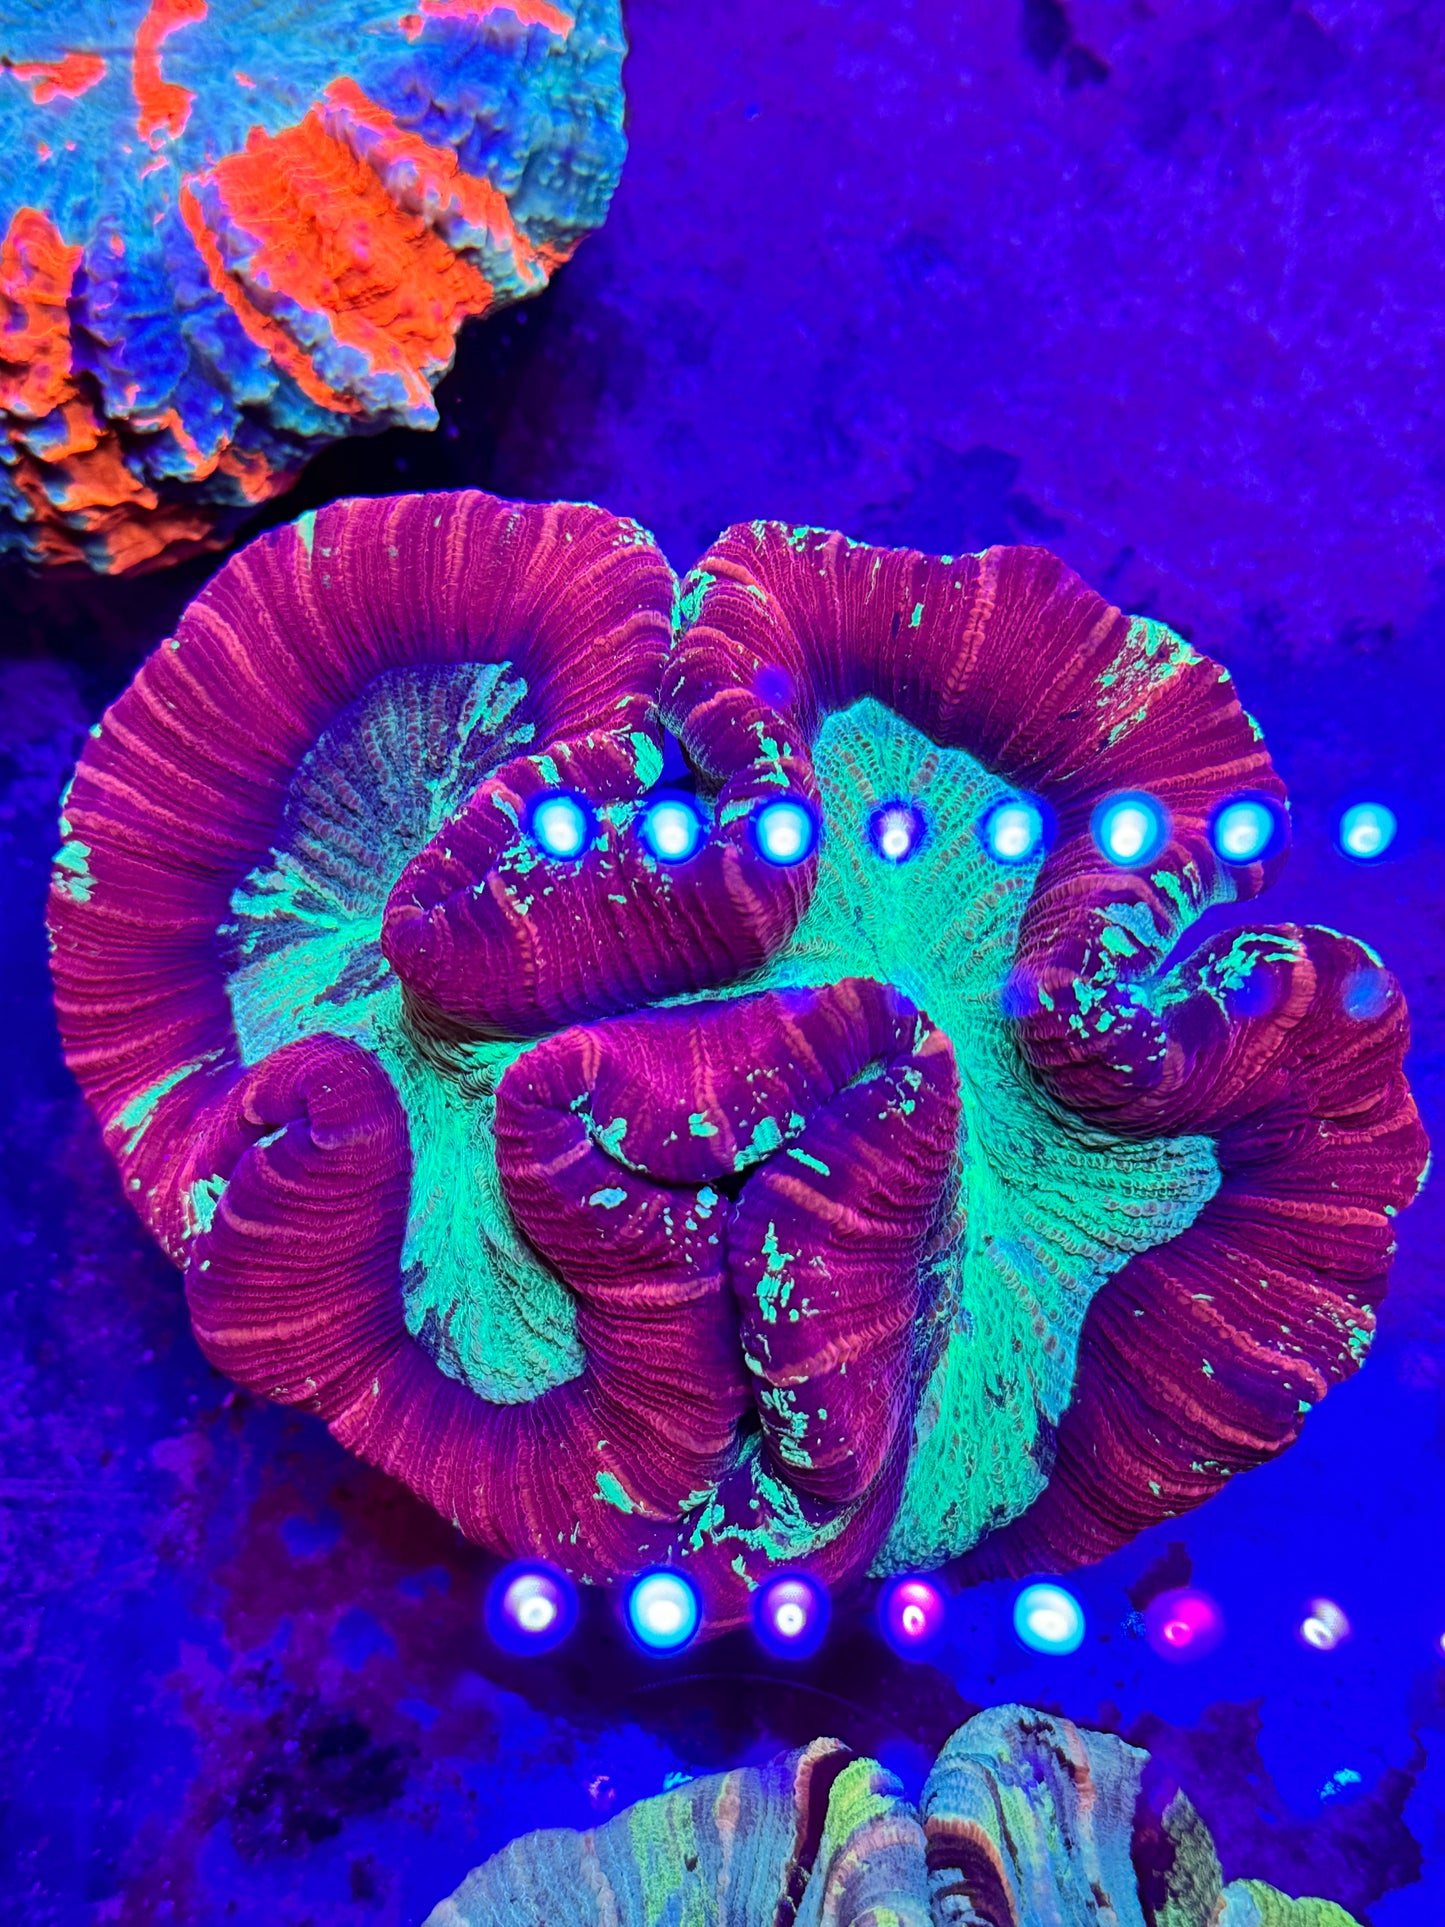 XXL Wellsophyllia Brain Coral